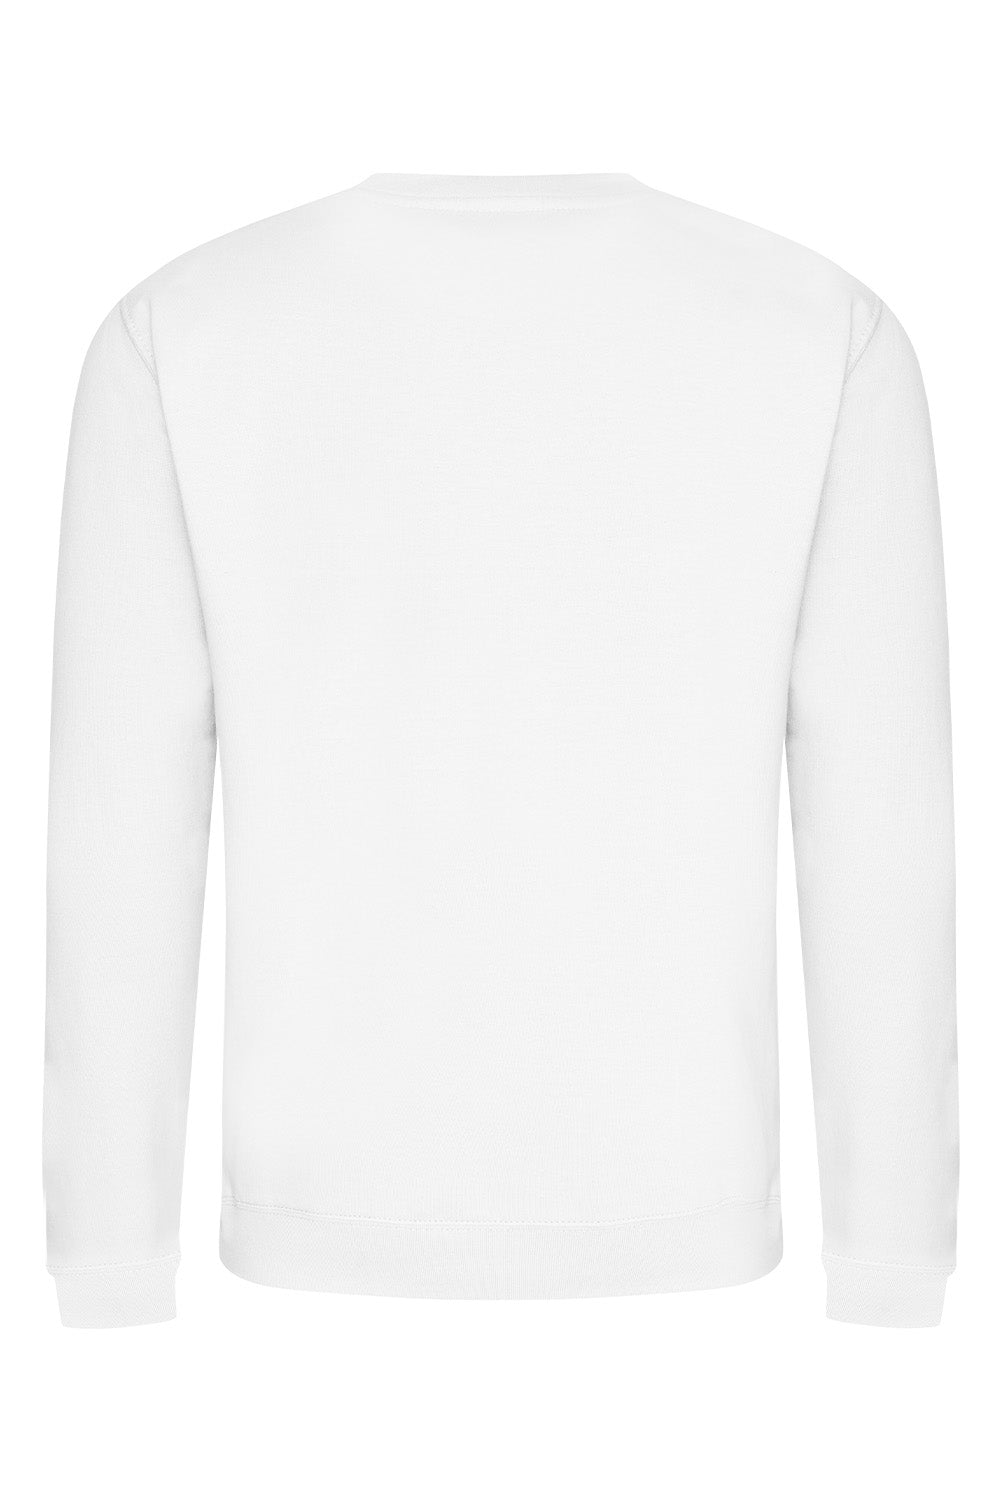 Vintage Rose Sweatshirt In Arctic White (Custom Pack)